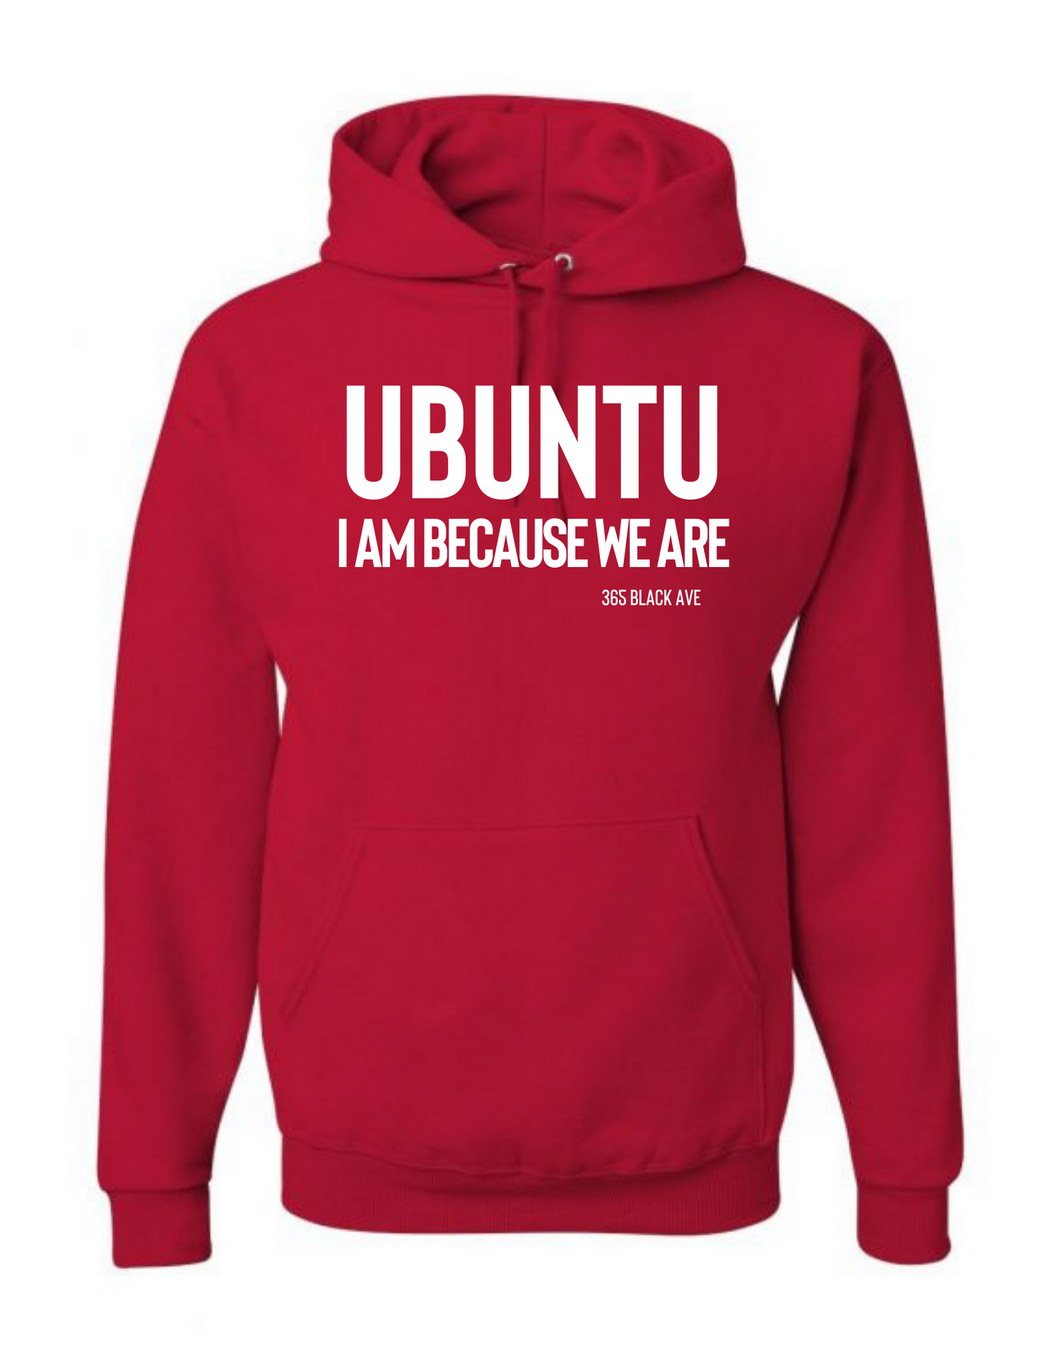 Ubuntu Hoodie